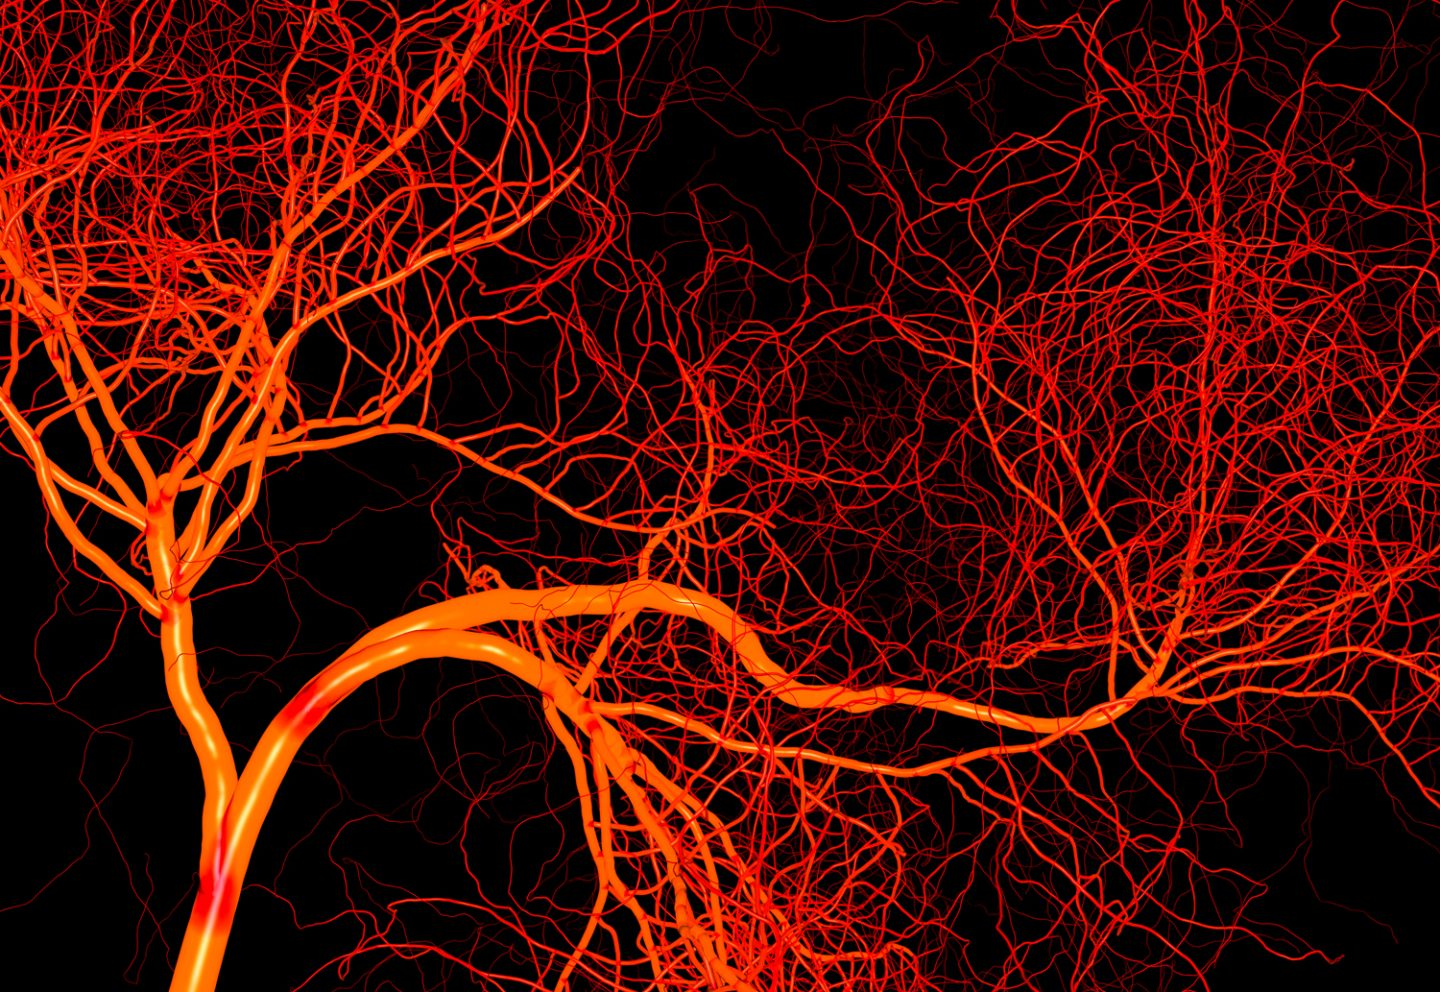 كيف تنشأ الأوعية الدموية بمواصفات مختلفة لتغذية أعضاء متعددة؟